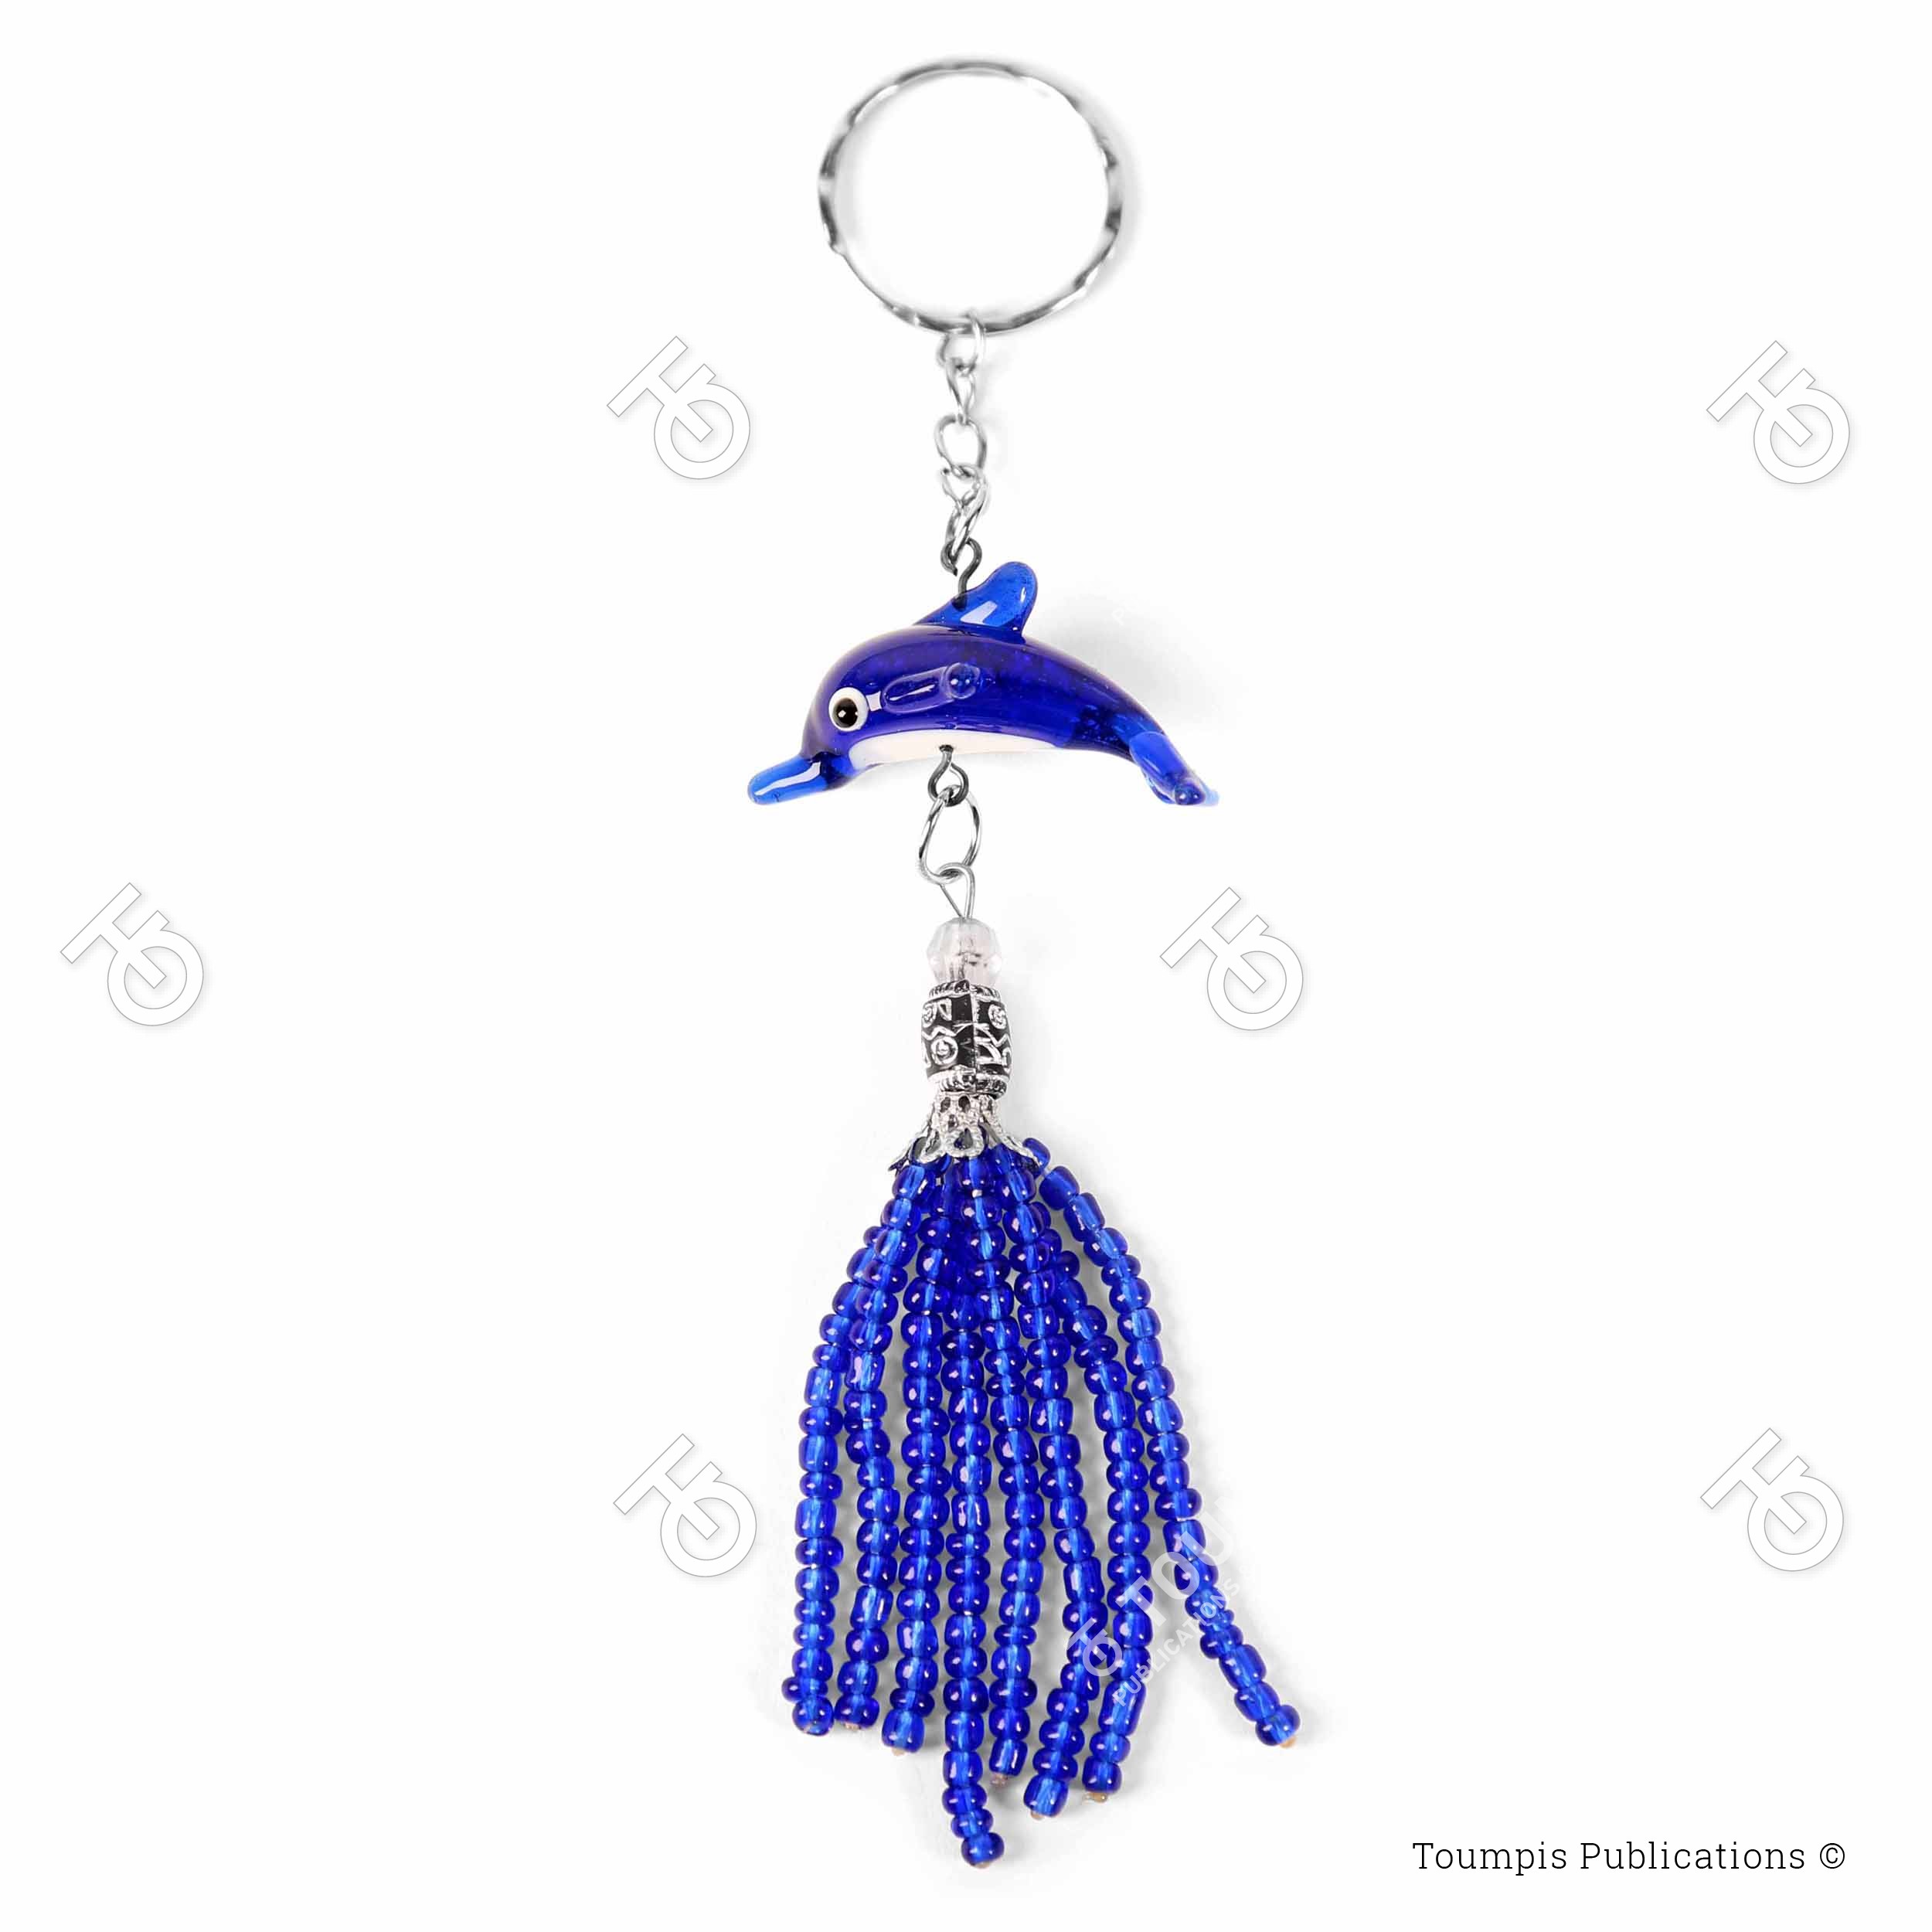 ψάρι, μπρελόκ ψαράκι μπλε χάντρα, keychain dolphin blue, mprelok delfini xantra